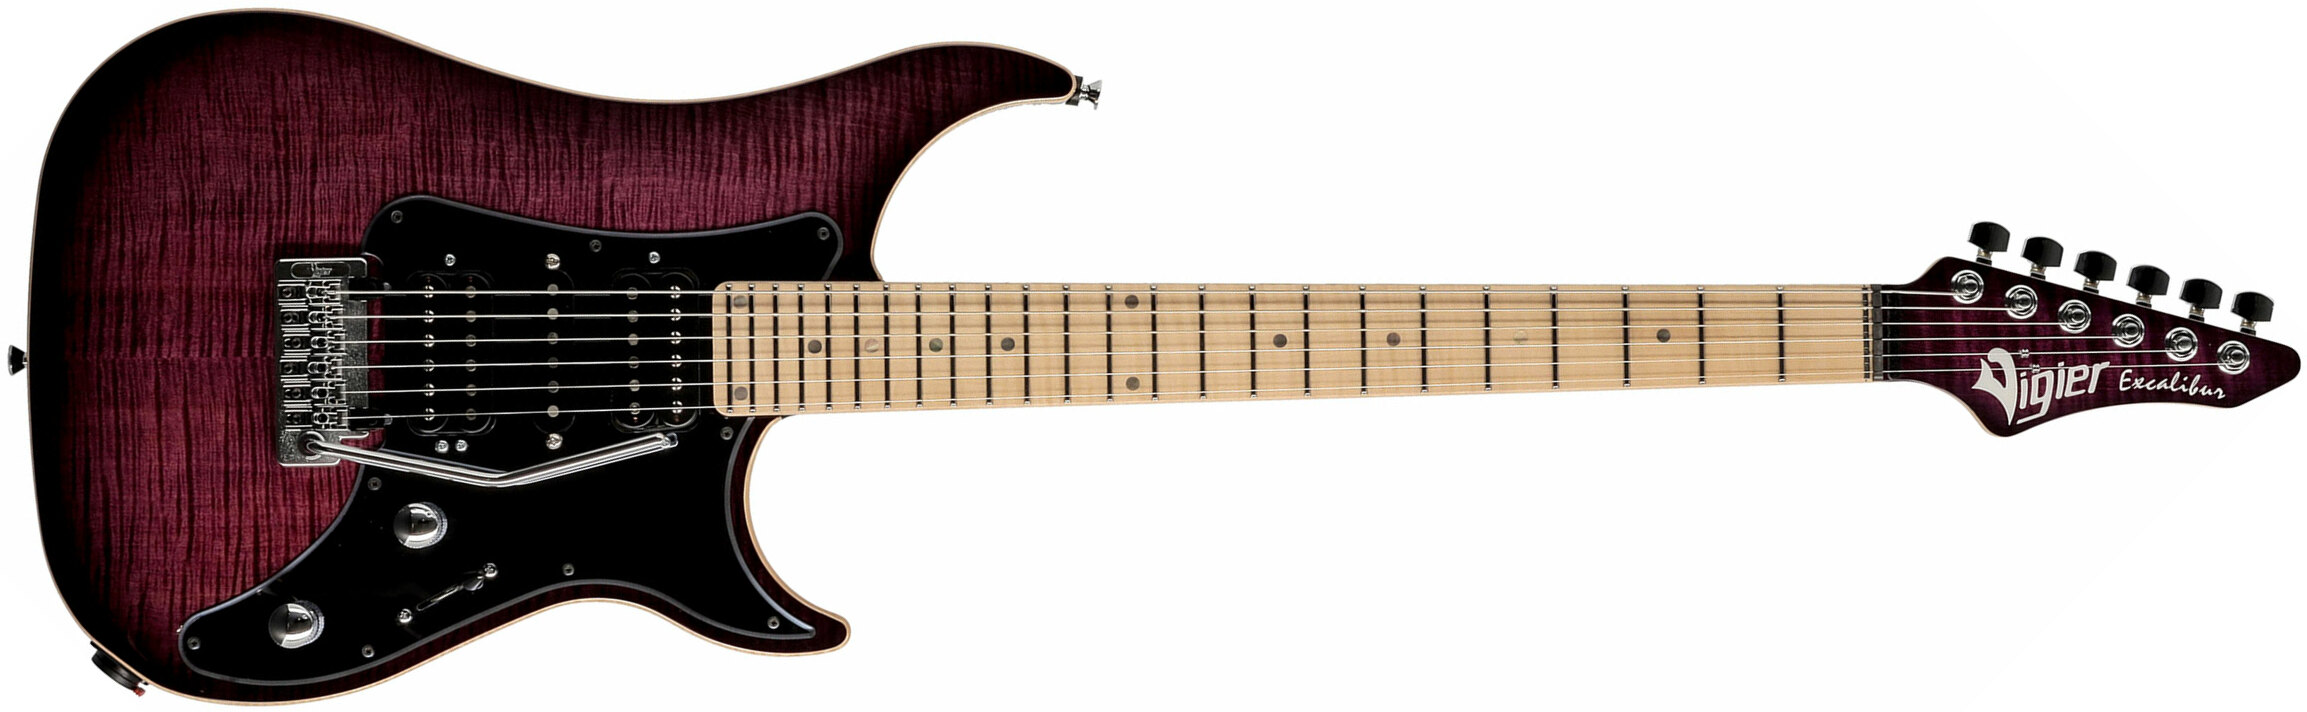 Vigier Excalibur Special Hsh Trem Mn - Mysterious Purple - Double cut electric guitar - Main picture